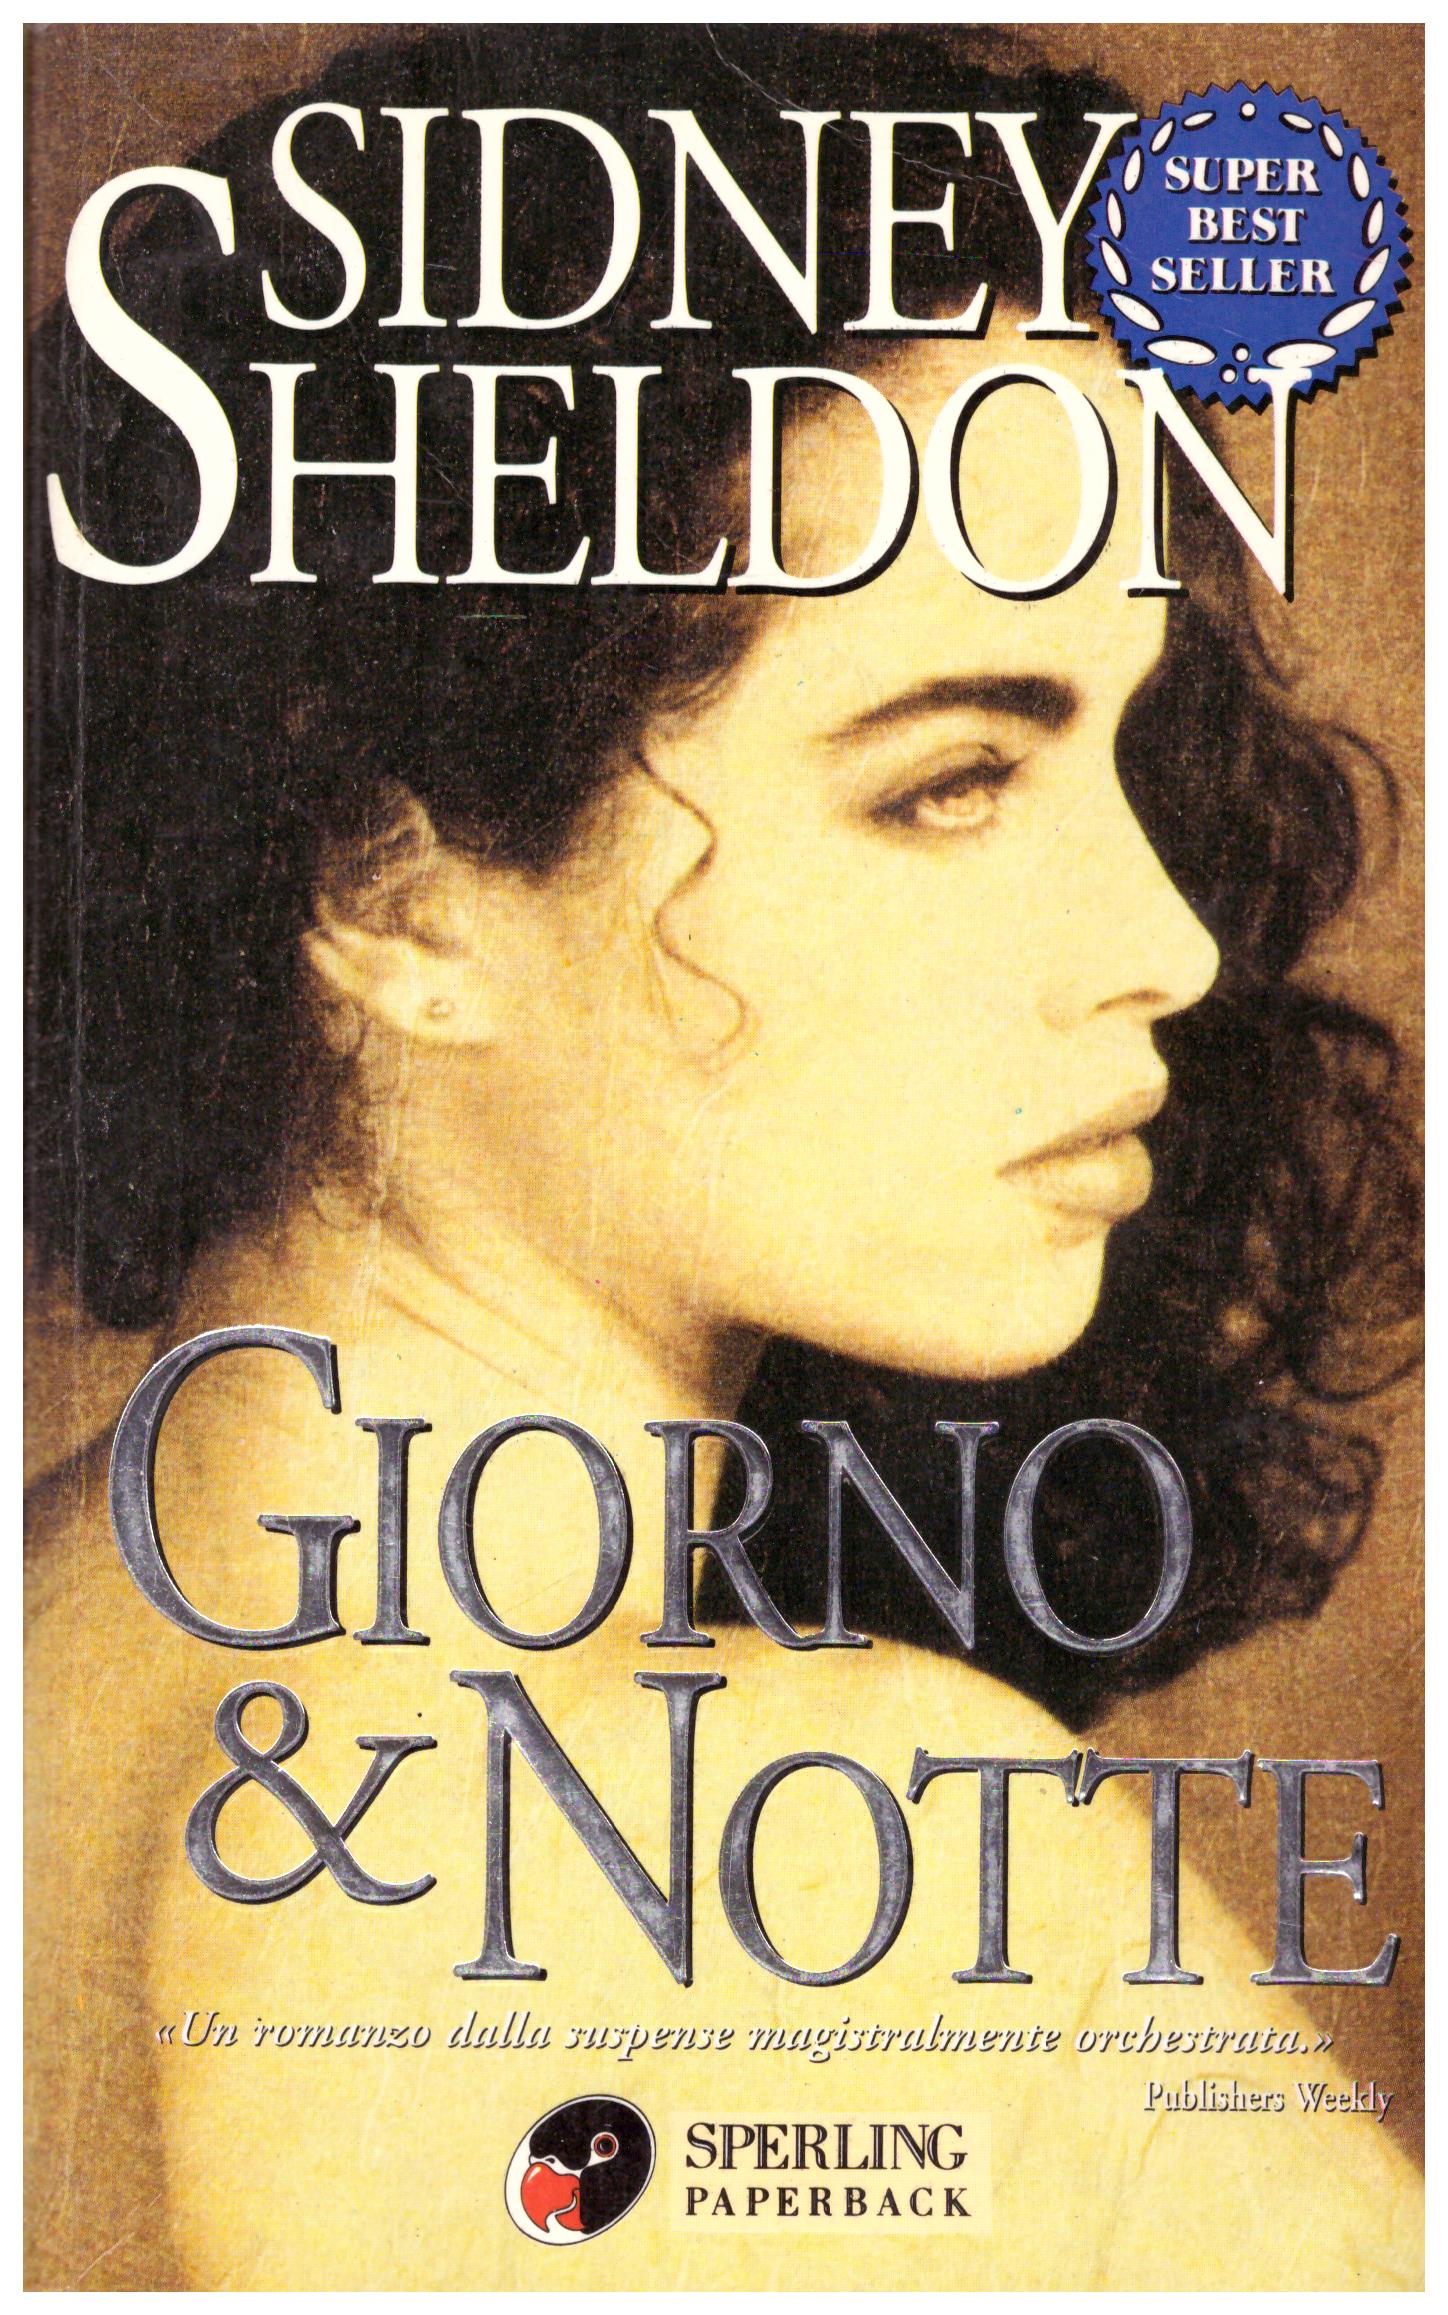 Titolo: Giorno e notte Autore: Sidney Sheldon Editore: Sperling paperback 1999